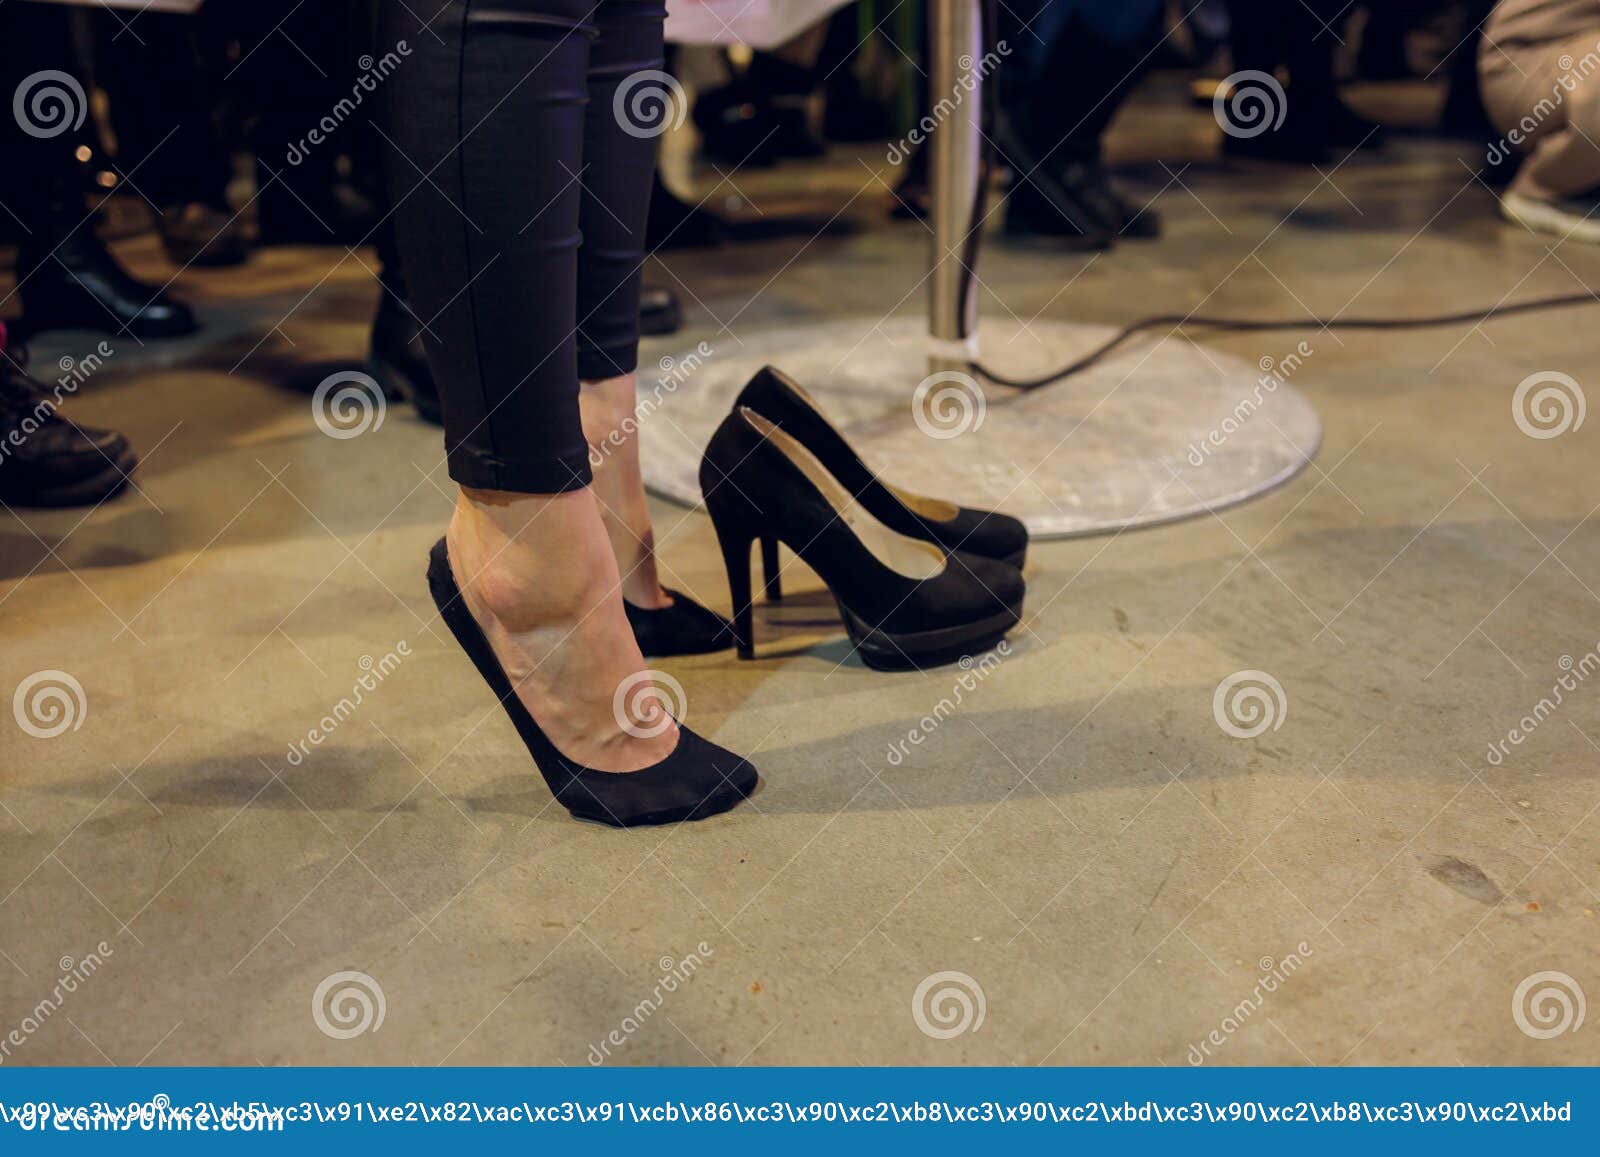 Mujer Quitando Zapatos De Tacones En Comprar Nuevos Stilettos. Pies Femeninos De Primer Plano Con Ante Negro Alto Imagen de archivo - Imagen de gente, fondo: 214747147